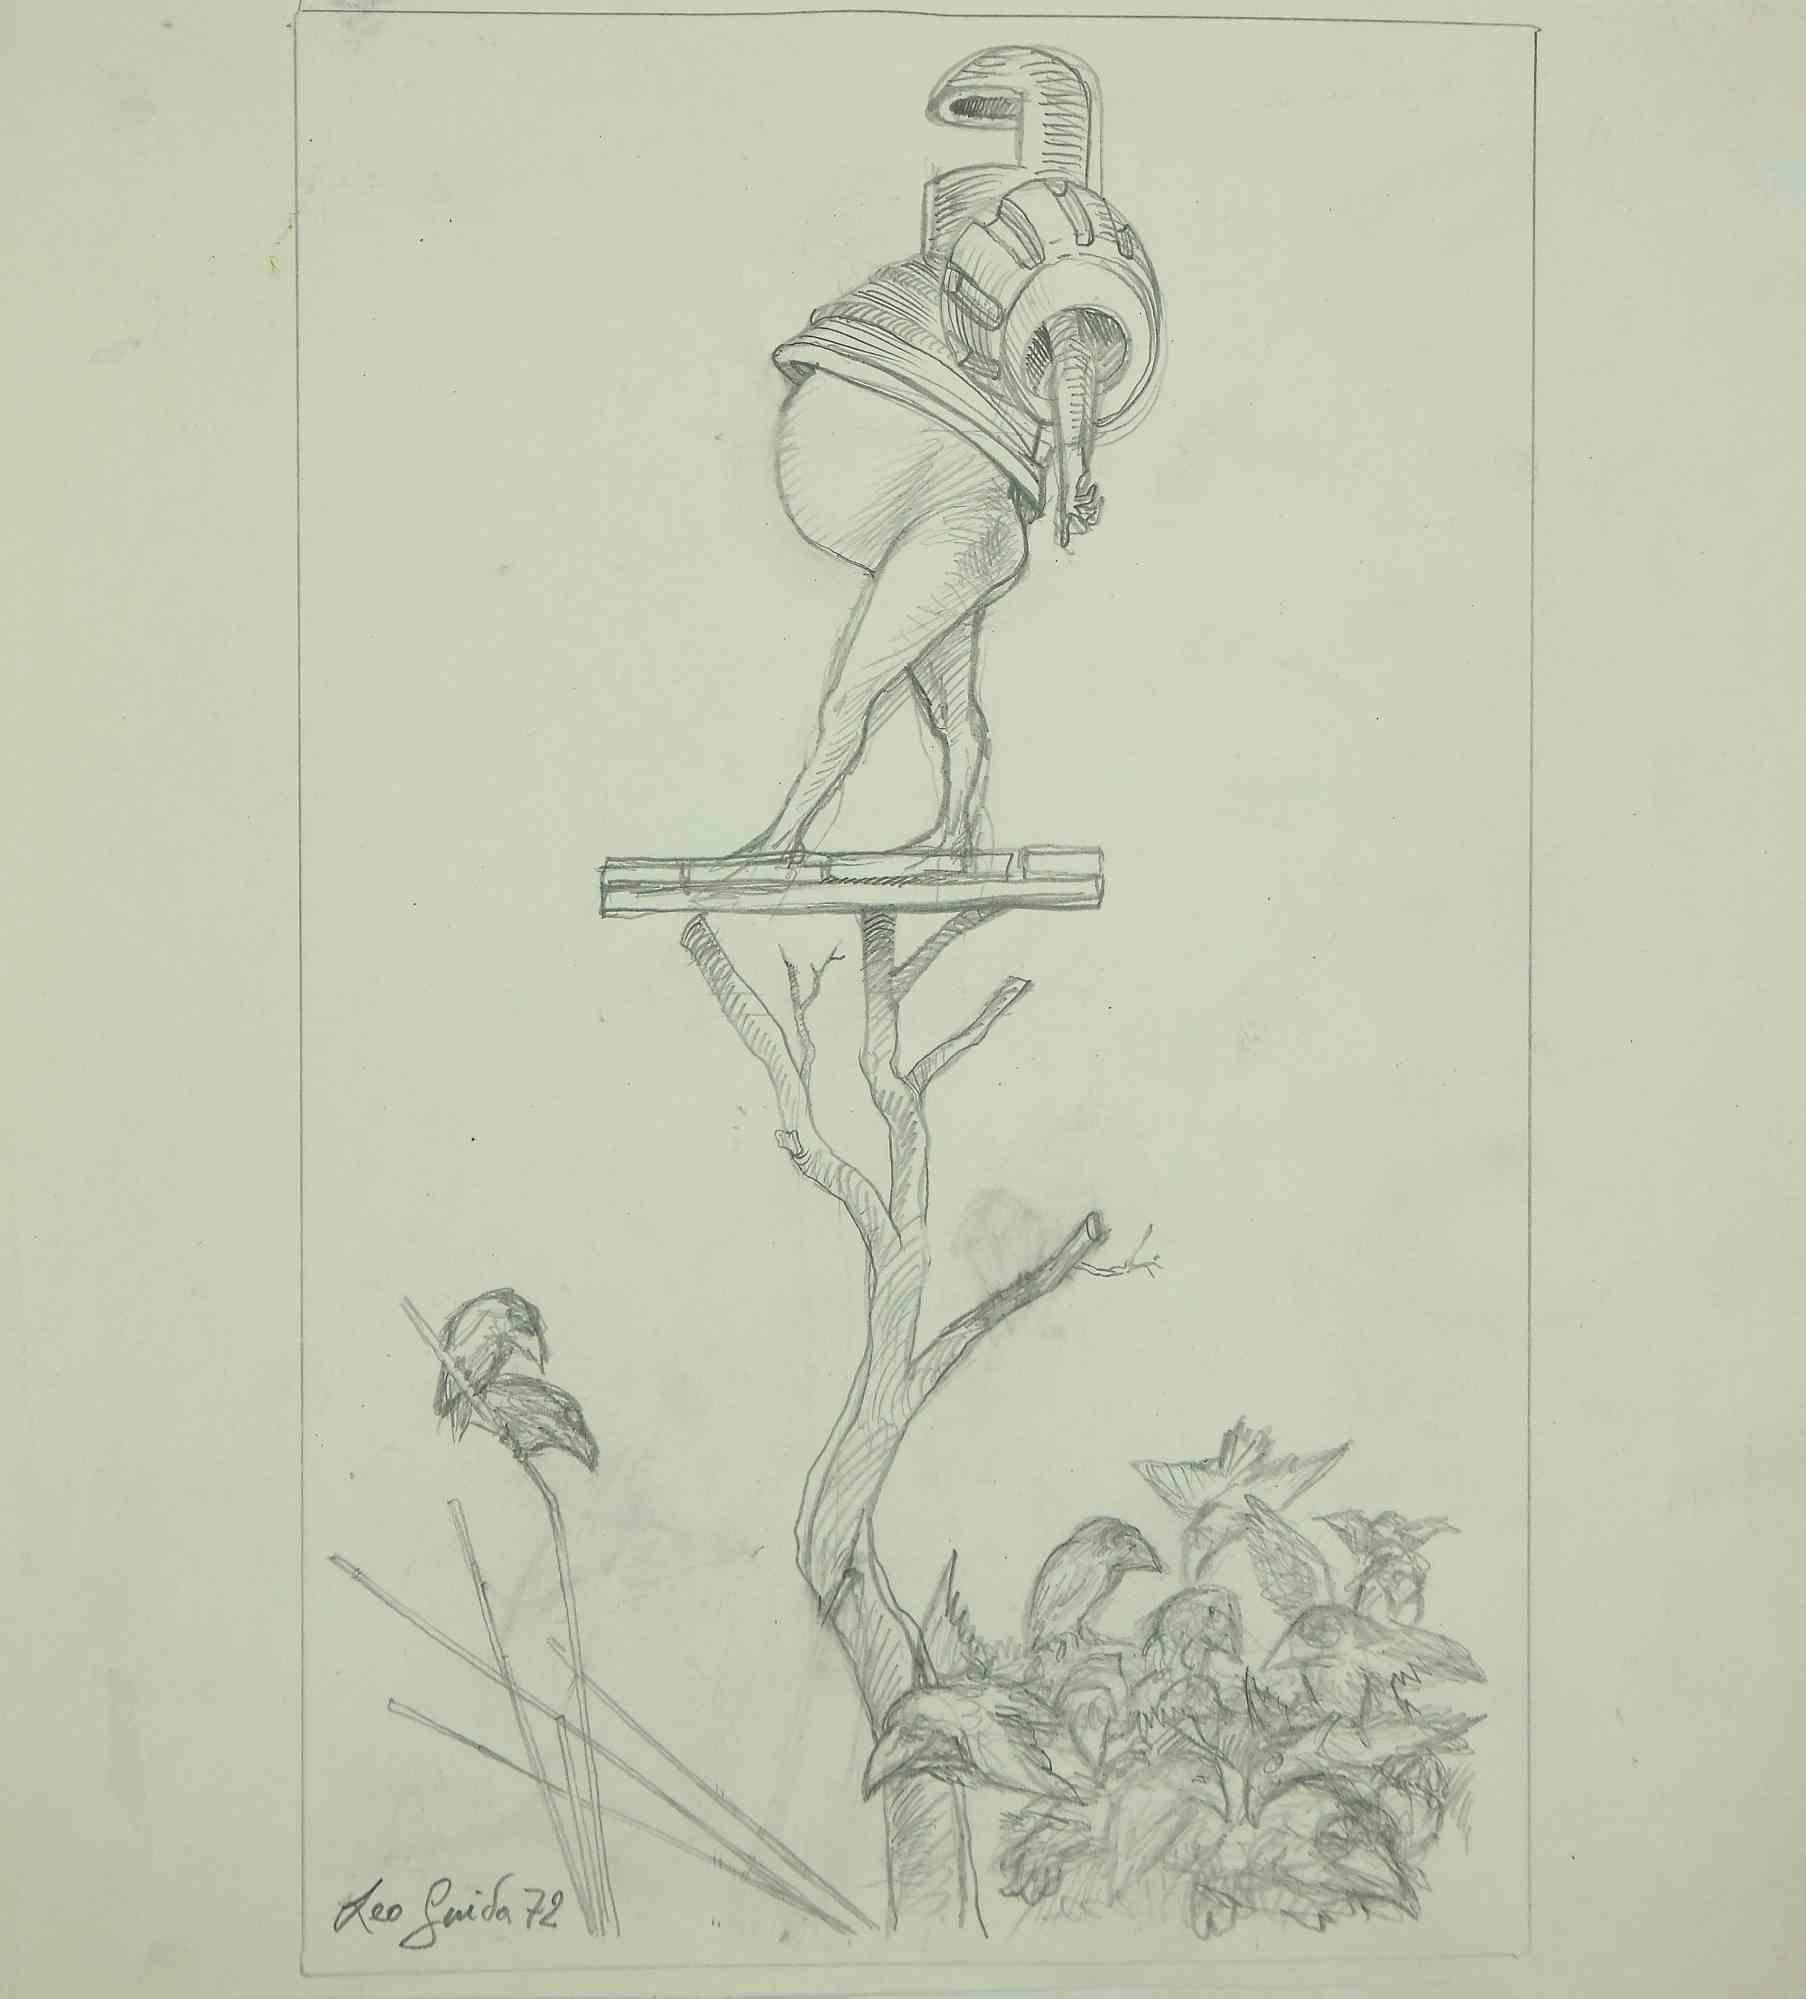 Skizze ist ein originales Kunstwerk  1972 von dem italienischen zeitgenössischen Künstler  Leo Guida  (1992 - 2017).

Original-Bleistiftzeichnung auf elfenbeinfarbenem Papier.

Am unteren Rand handsigniert und datiert. 

Dieses Kunstwerk stellt eine